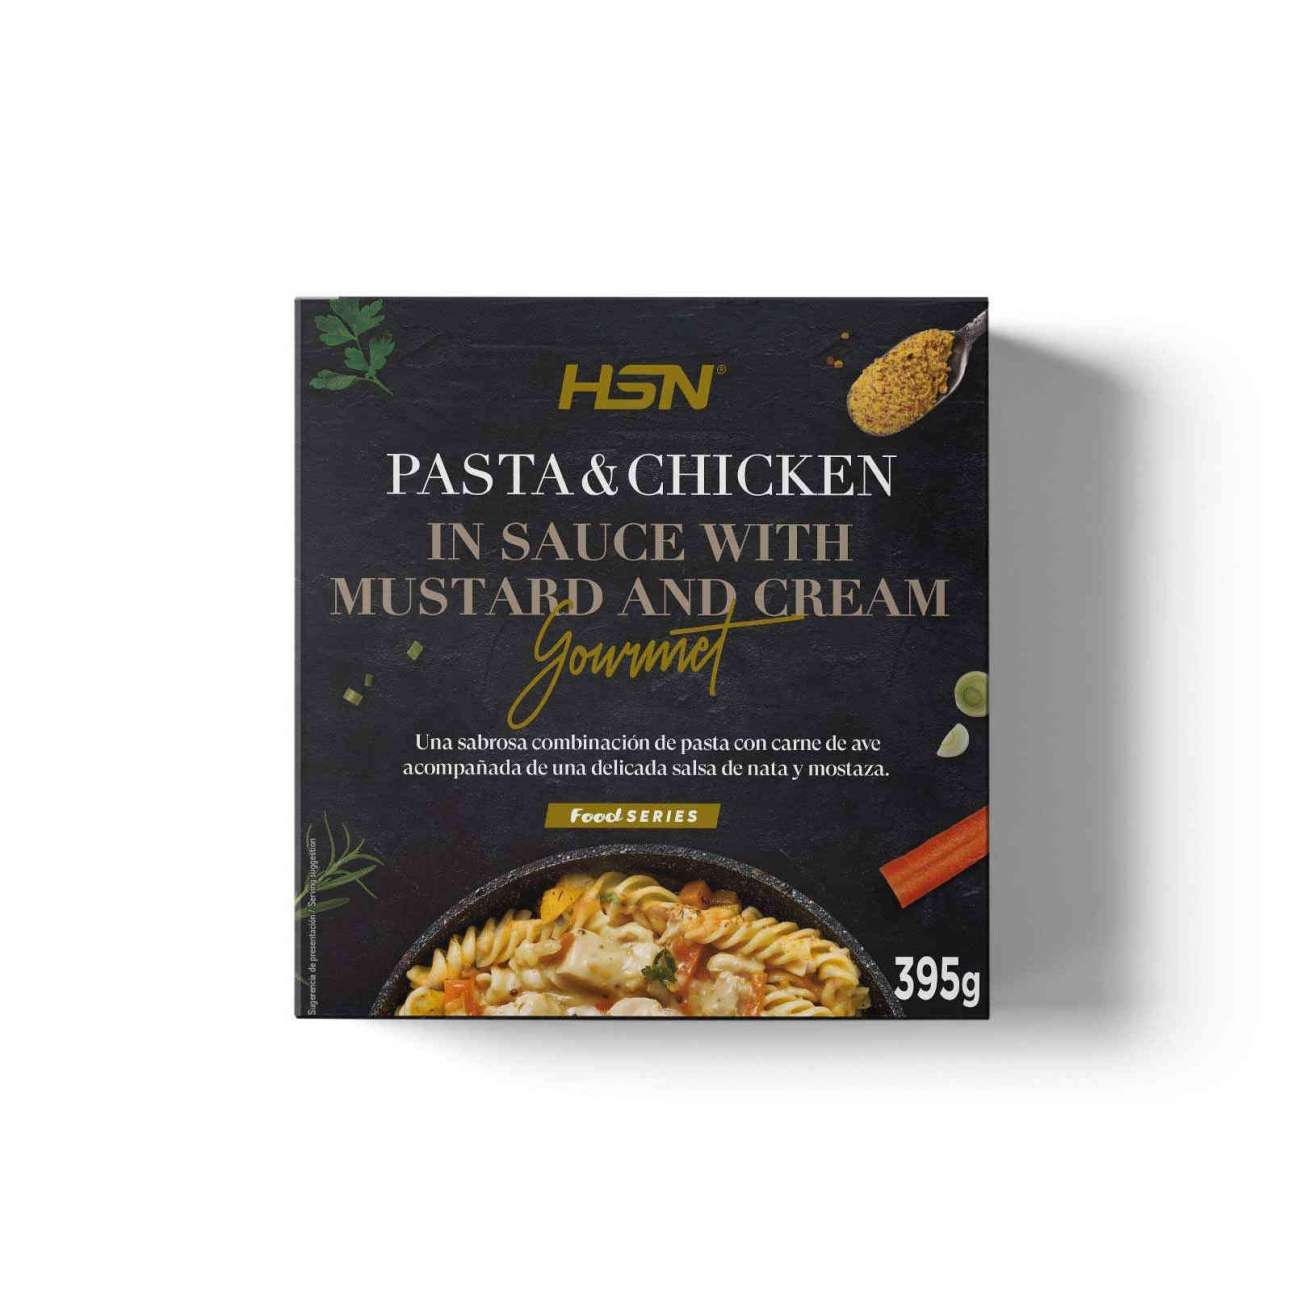 HSN Plato preparado estilo gourmet pasta con pollo en salsa de mostaza y nata - 395g